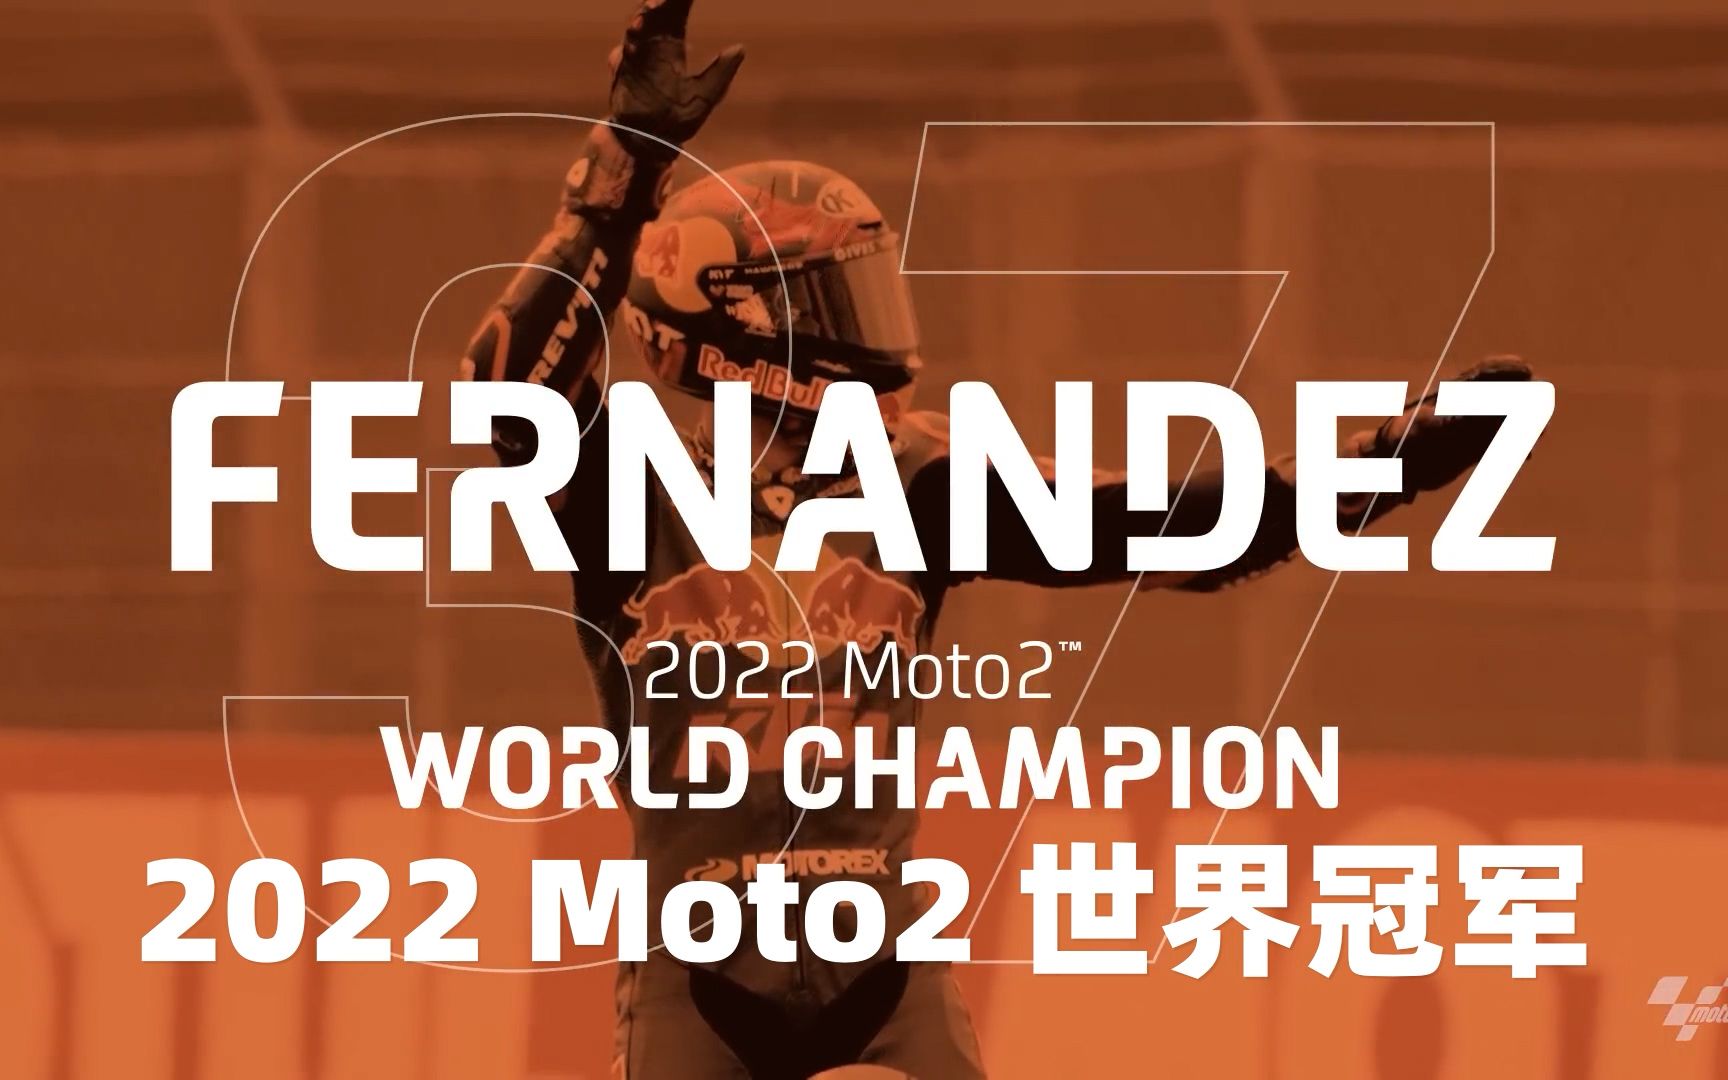 下一站，MotoGP！ 恭喜KTM厂队选手Augusto Fernandez获得2022年Moto2世界冠军并成功升入GP组！ #READYTORACE